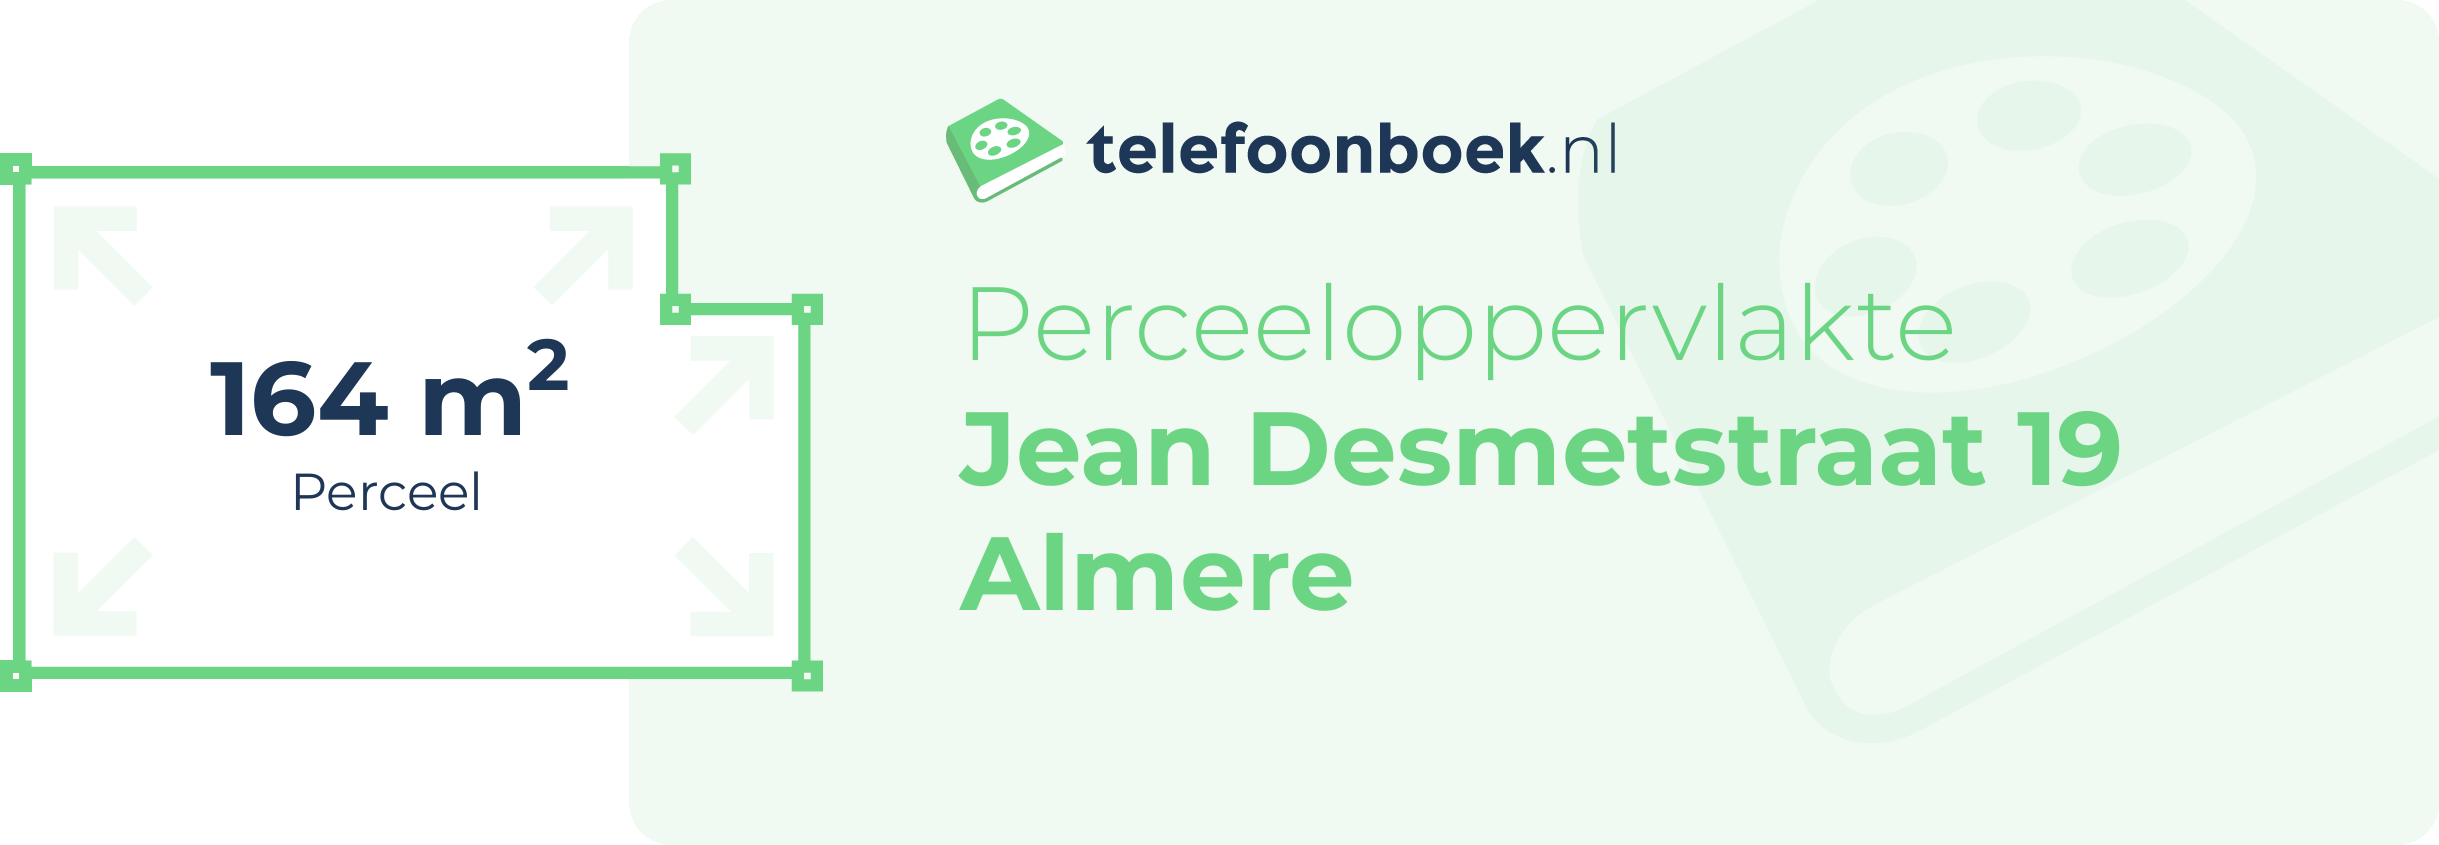 Perceeloppervlakte Jean Desmetstraat 19 Almere